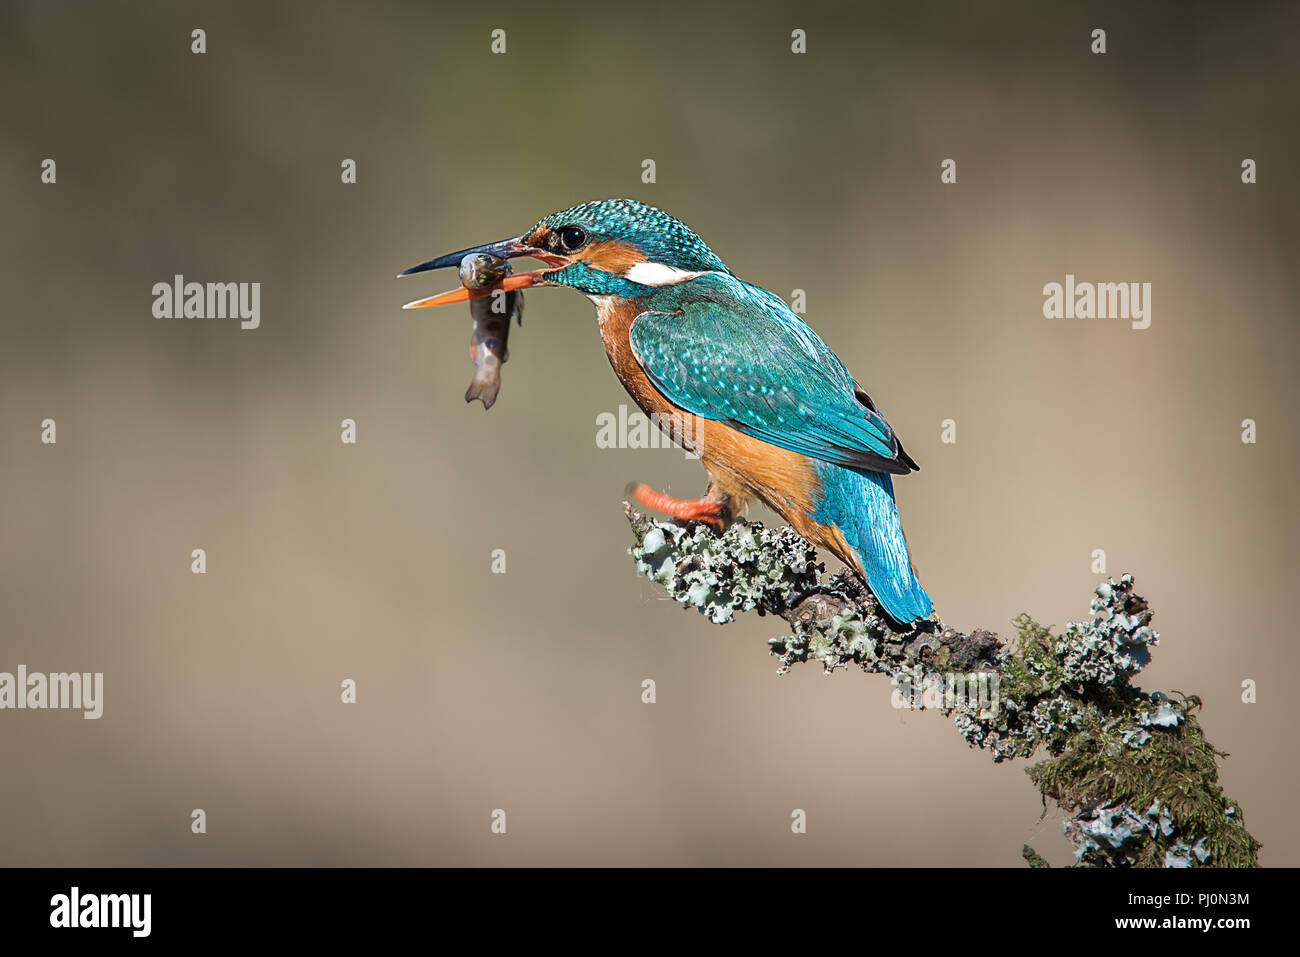 Una hembra kingfisher se asienta en una rama cubiertos de líquenes. Después de una exitosa div, tiene un minnow en su pico. Mirando de izquierda a derecha con espacio de copia Foto de stock